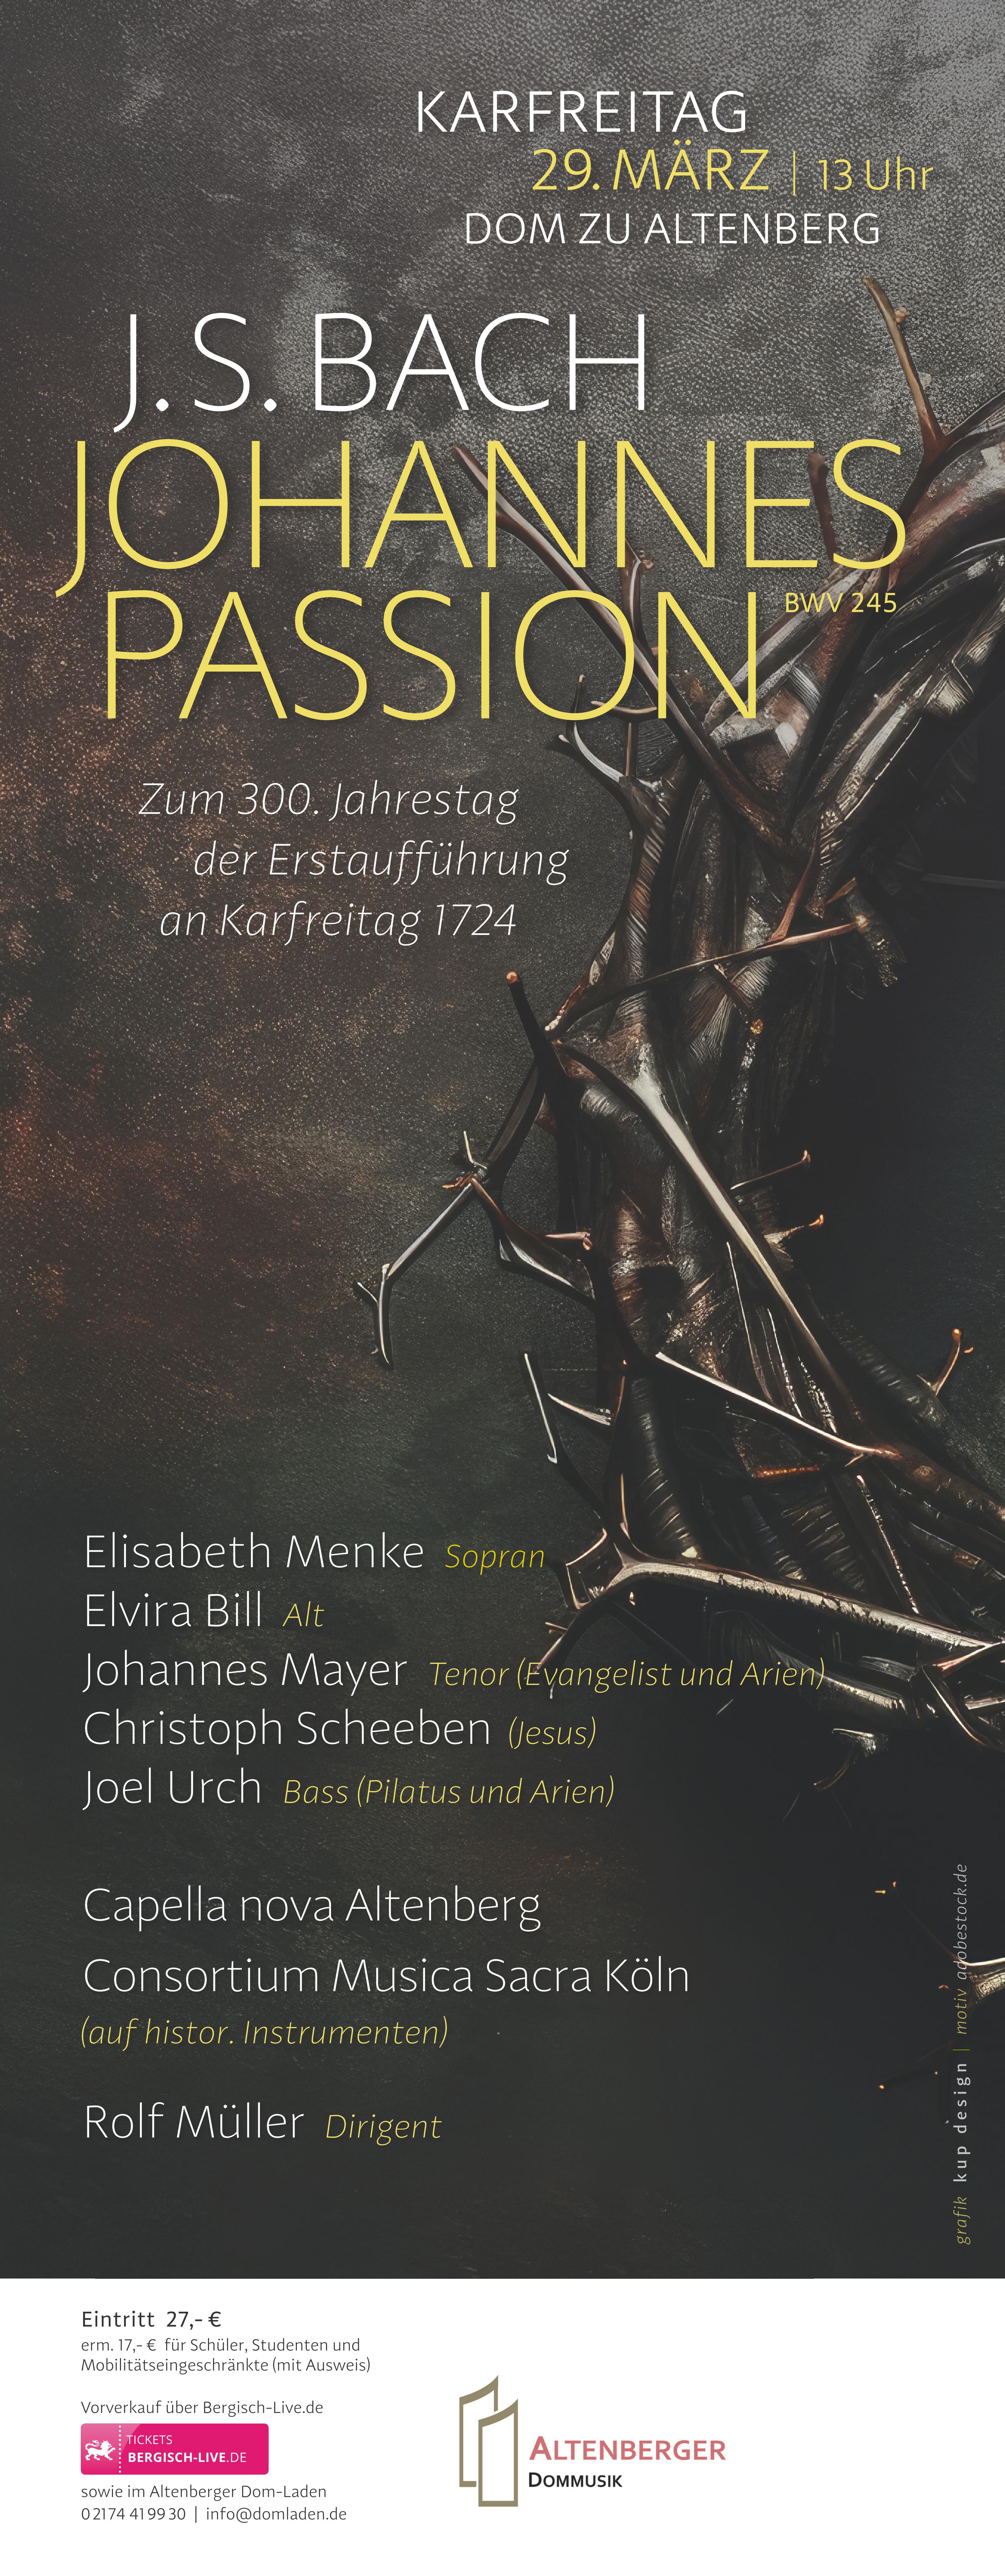 Plakat für Konzert Johannespassion am 29. März in Altenberg